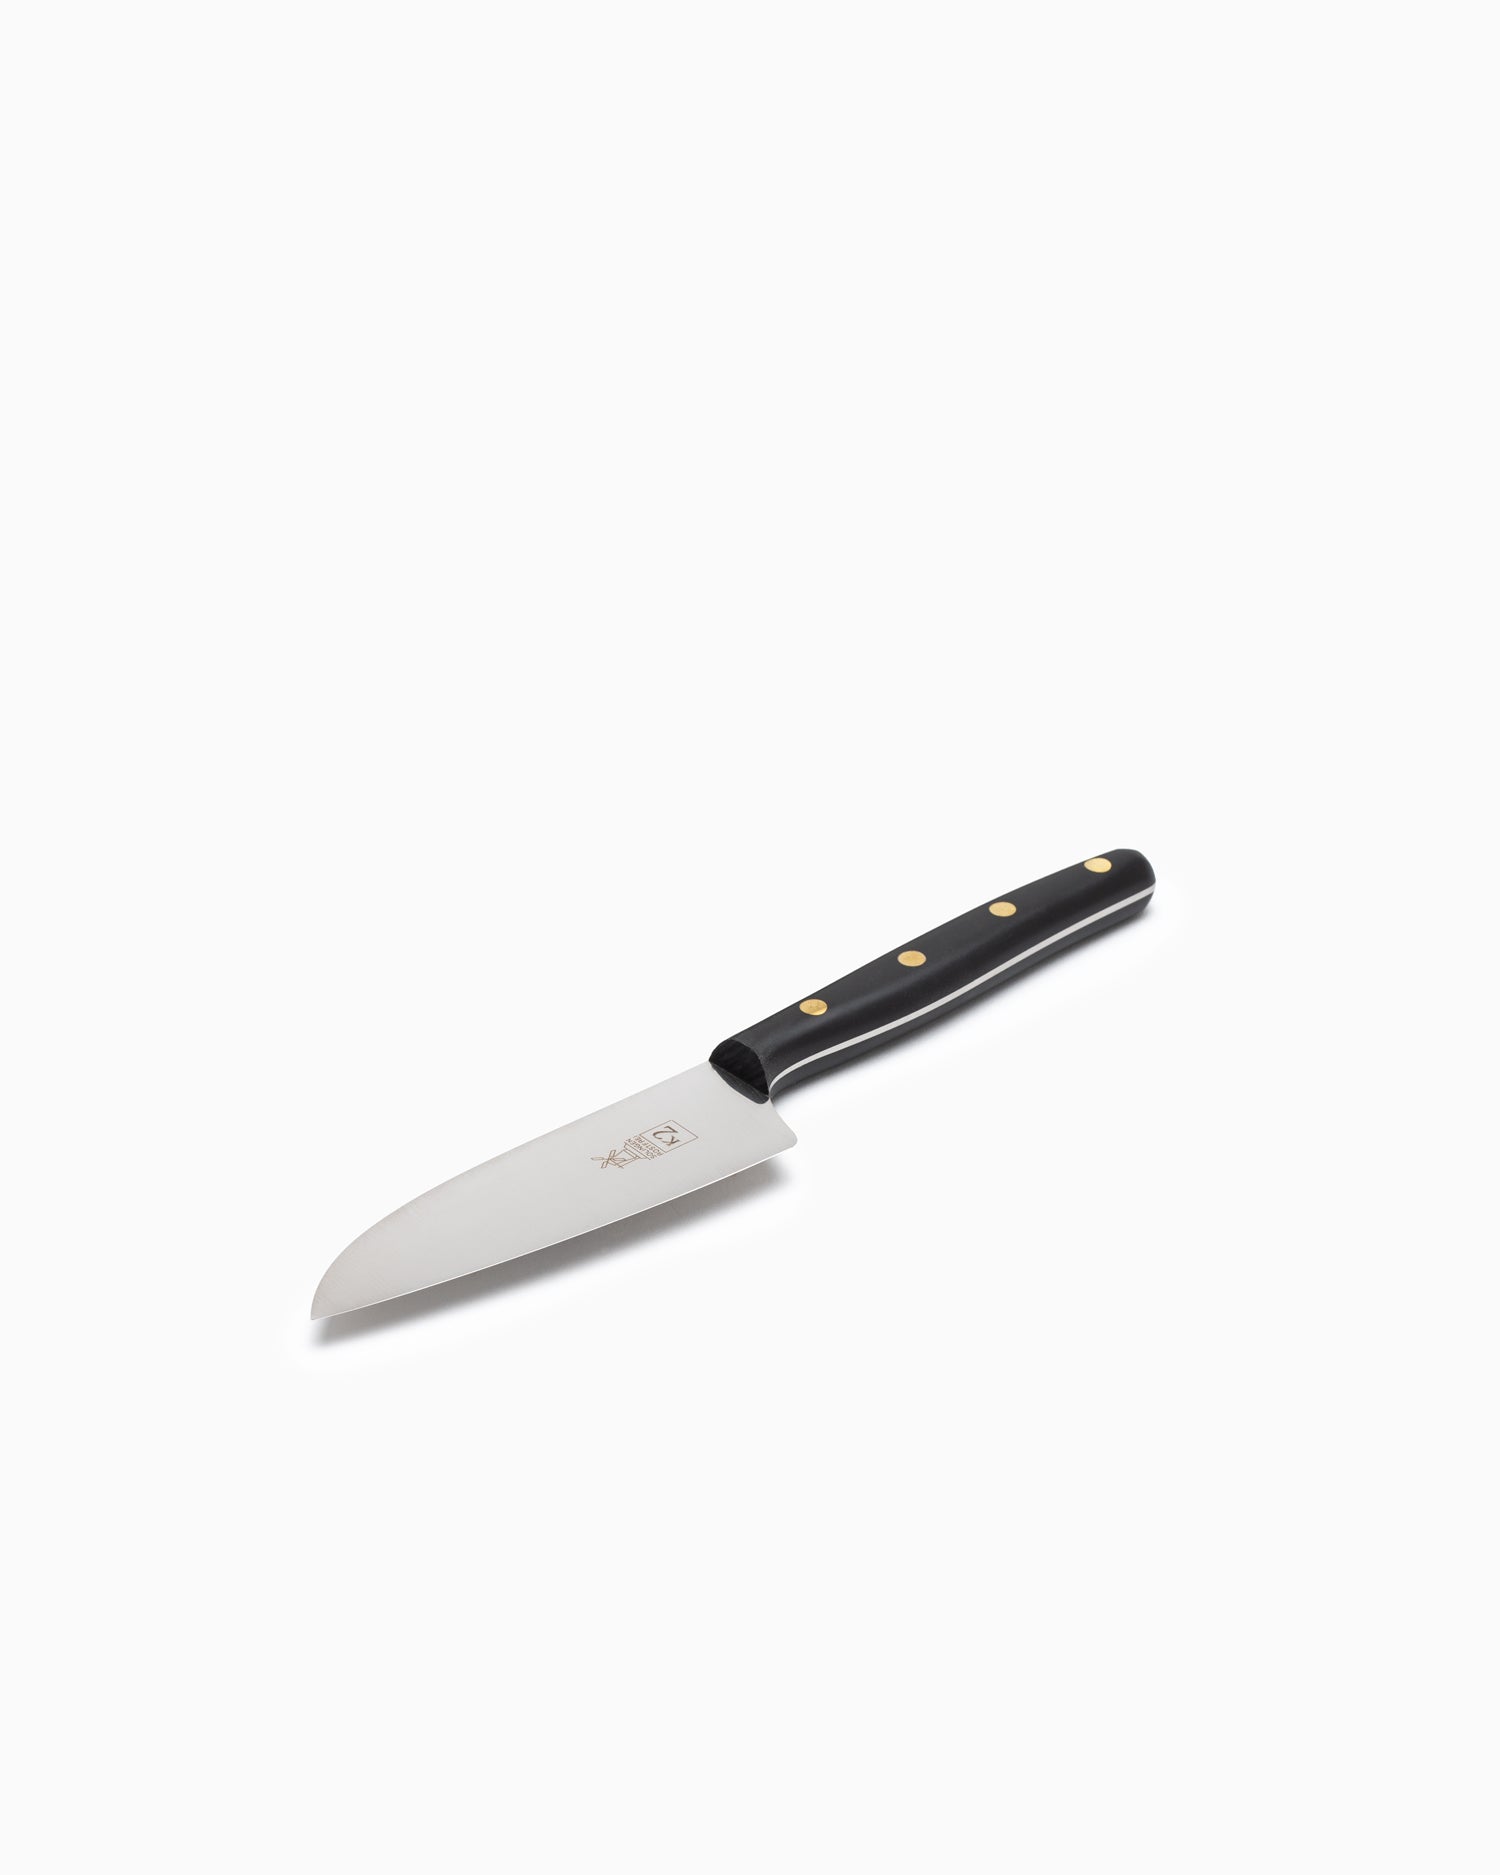 Robert Herder K2 Kitchen Knife - Stainless, Black